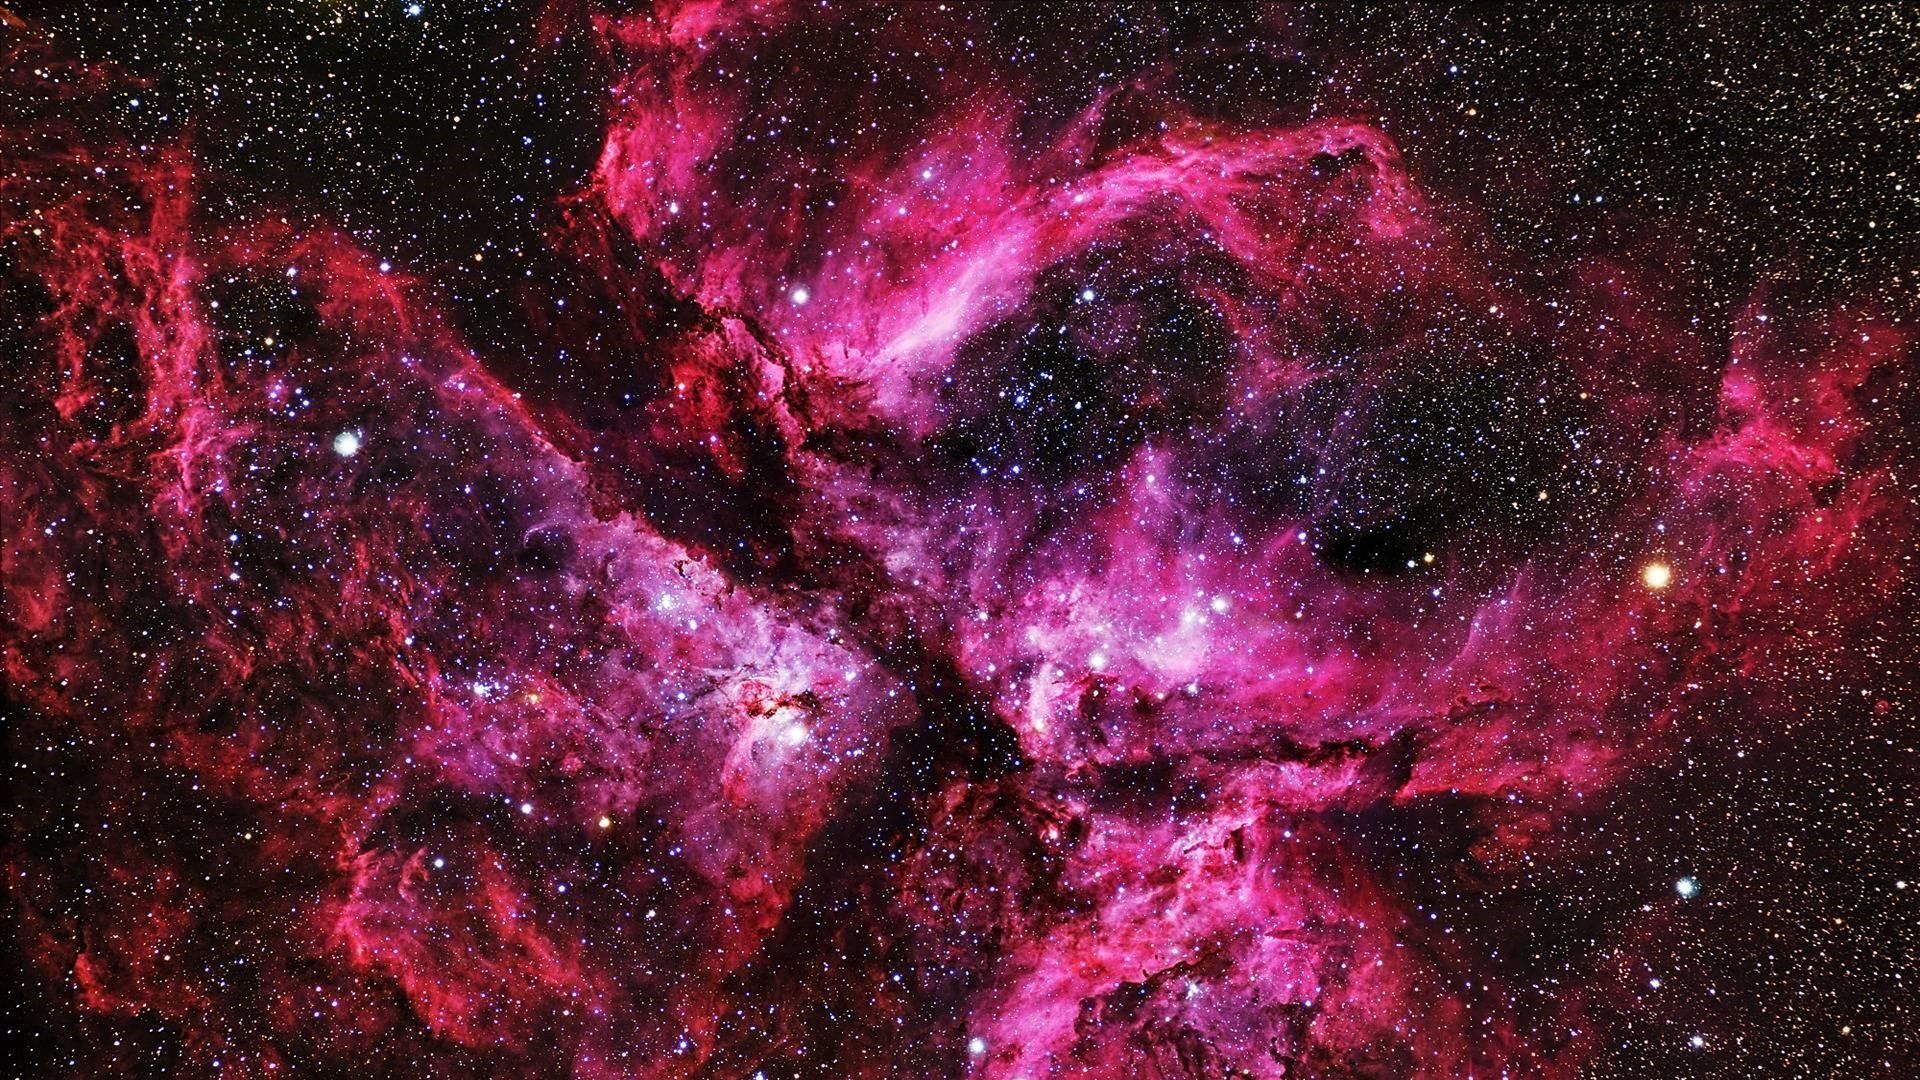 Nếu bạn đang tìm kiếm hình nền Pink Galaxy đẹp mắt, thì hãy đến với WallpaperDog. Chúng tôi cam kết cung cấp cho bạn những hình nền vũ trụ đẹp nhất và phù hợp với nhu cầu của bạn. Hãy truy cập ngay để tìm kiếm hình nền mình yêu thích.